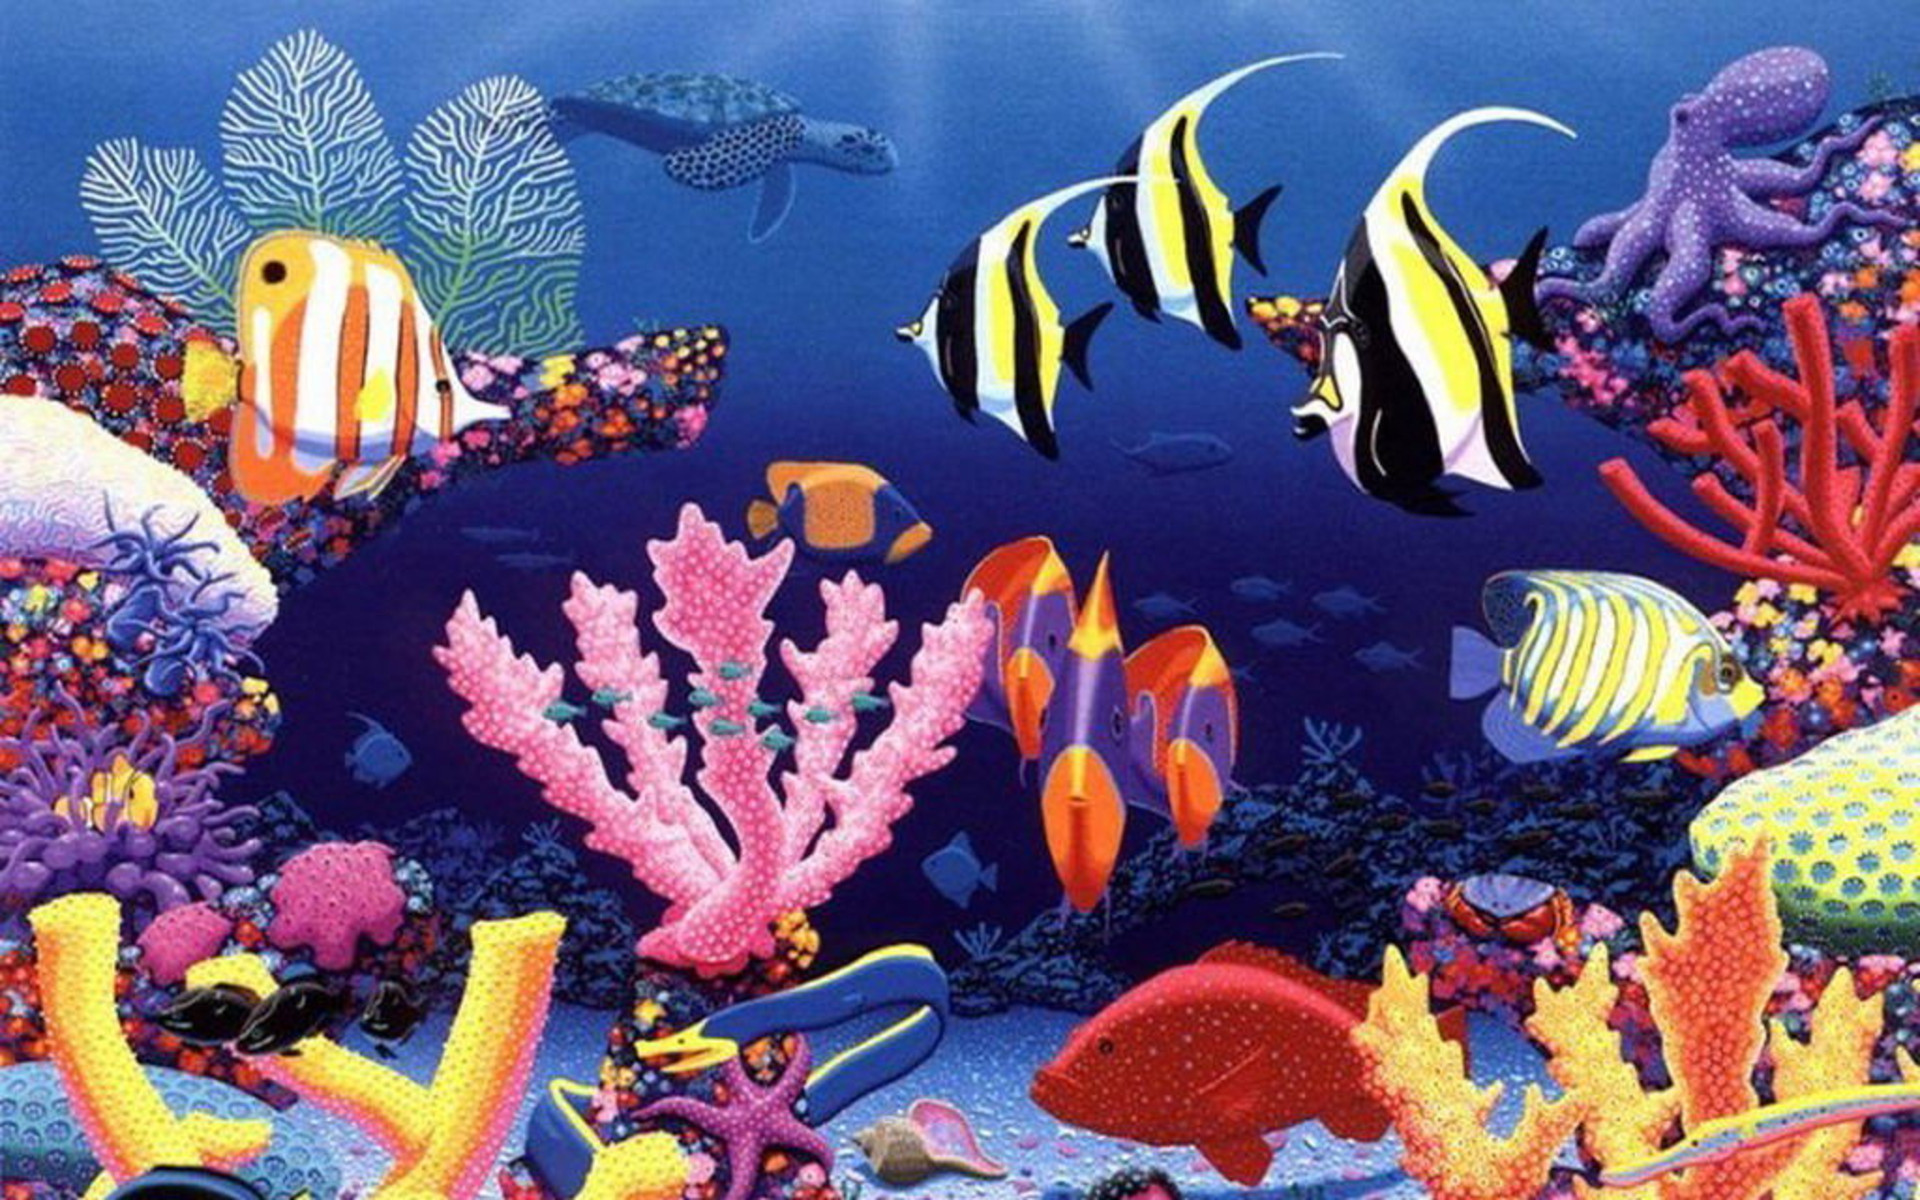 tapetenfisch im wasser,korallenriff,korallenrifffische,meeresbiologie,riff,unter wasser